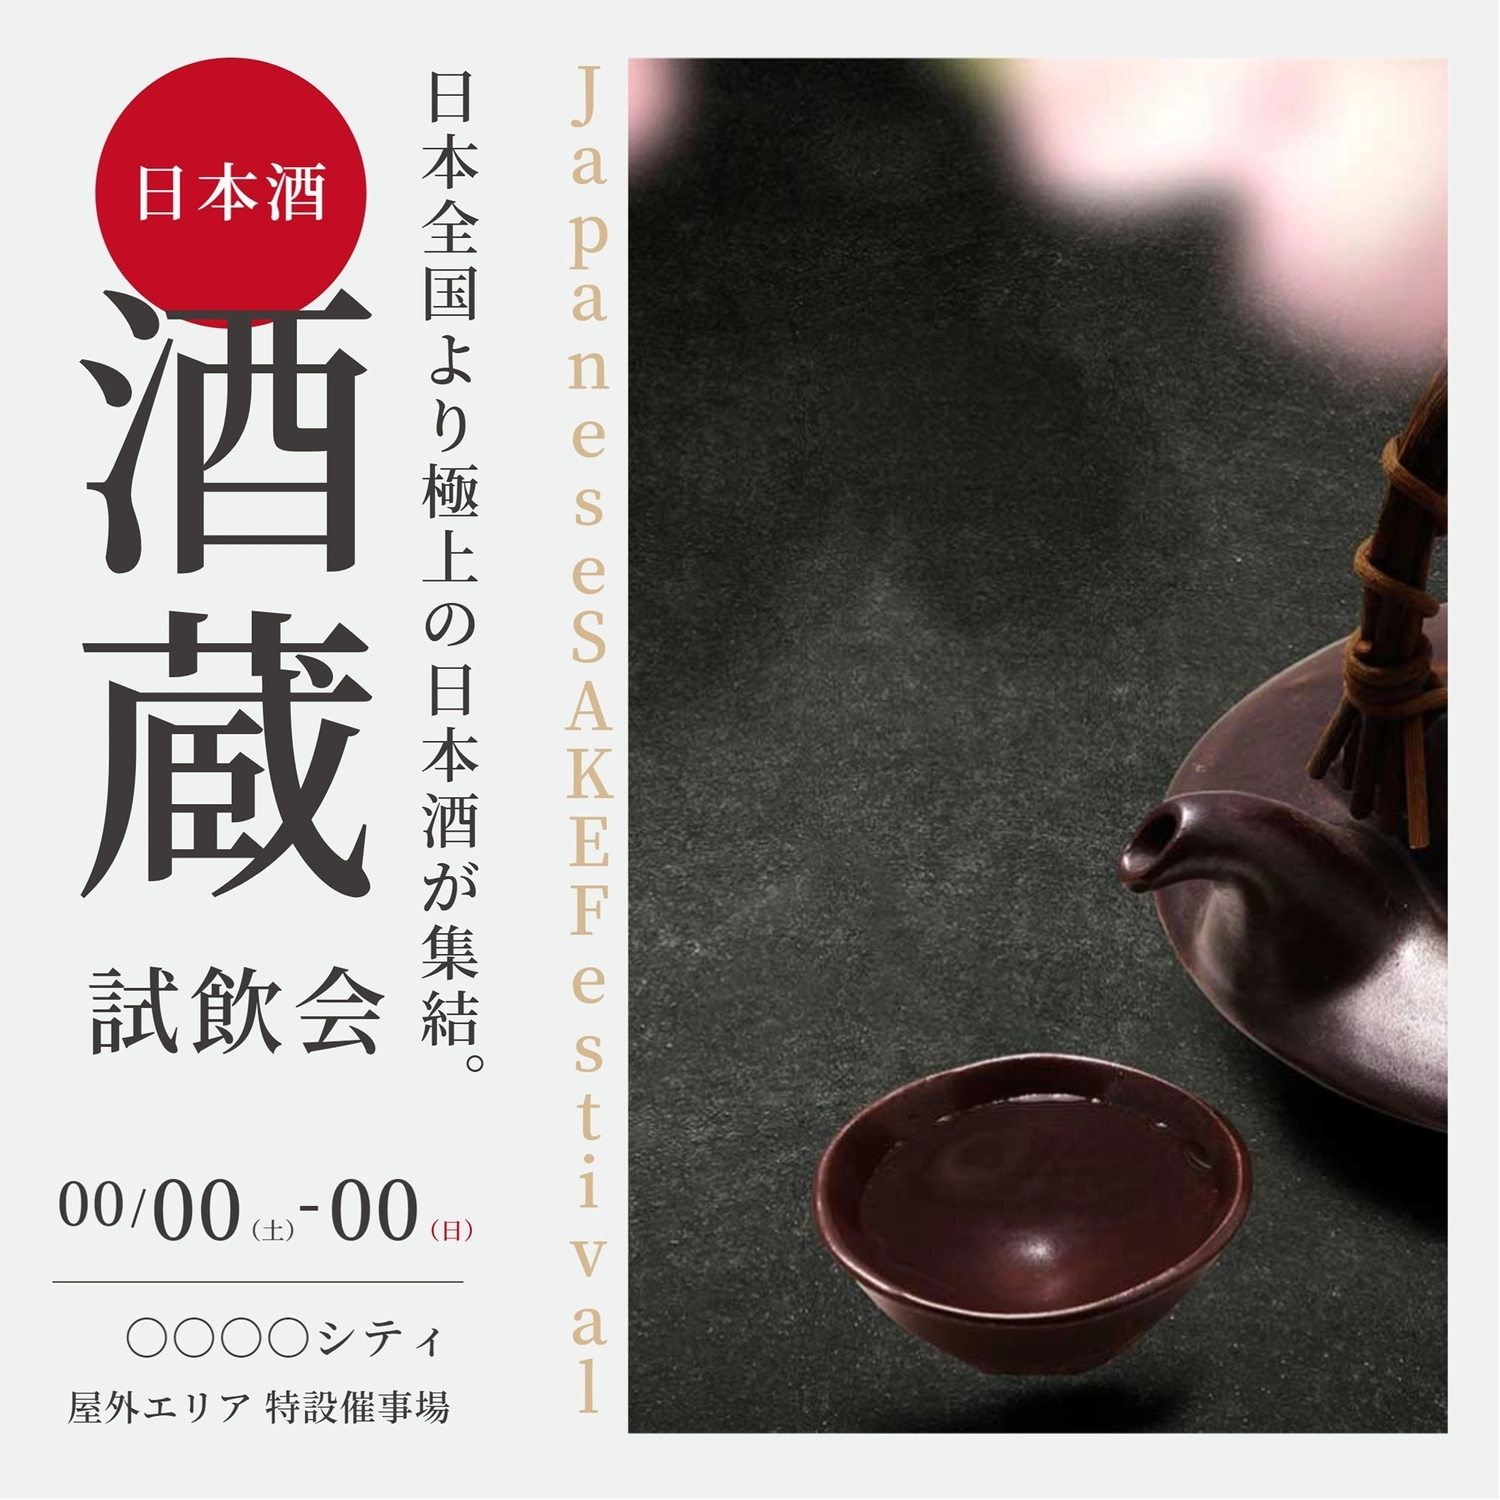 日本酒試飲会デザイン, 사진, 다이어트, 기간 한정, 인스 타 그램 포스트 템플릿